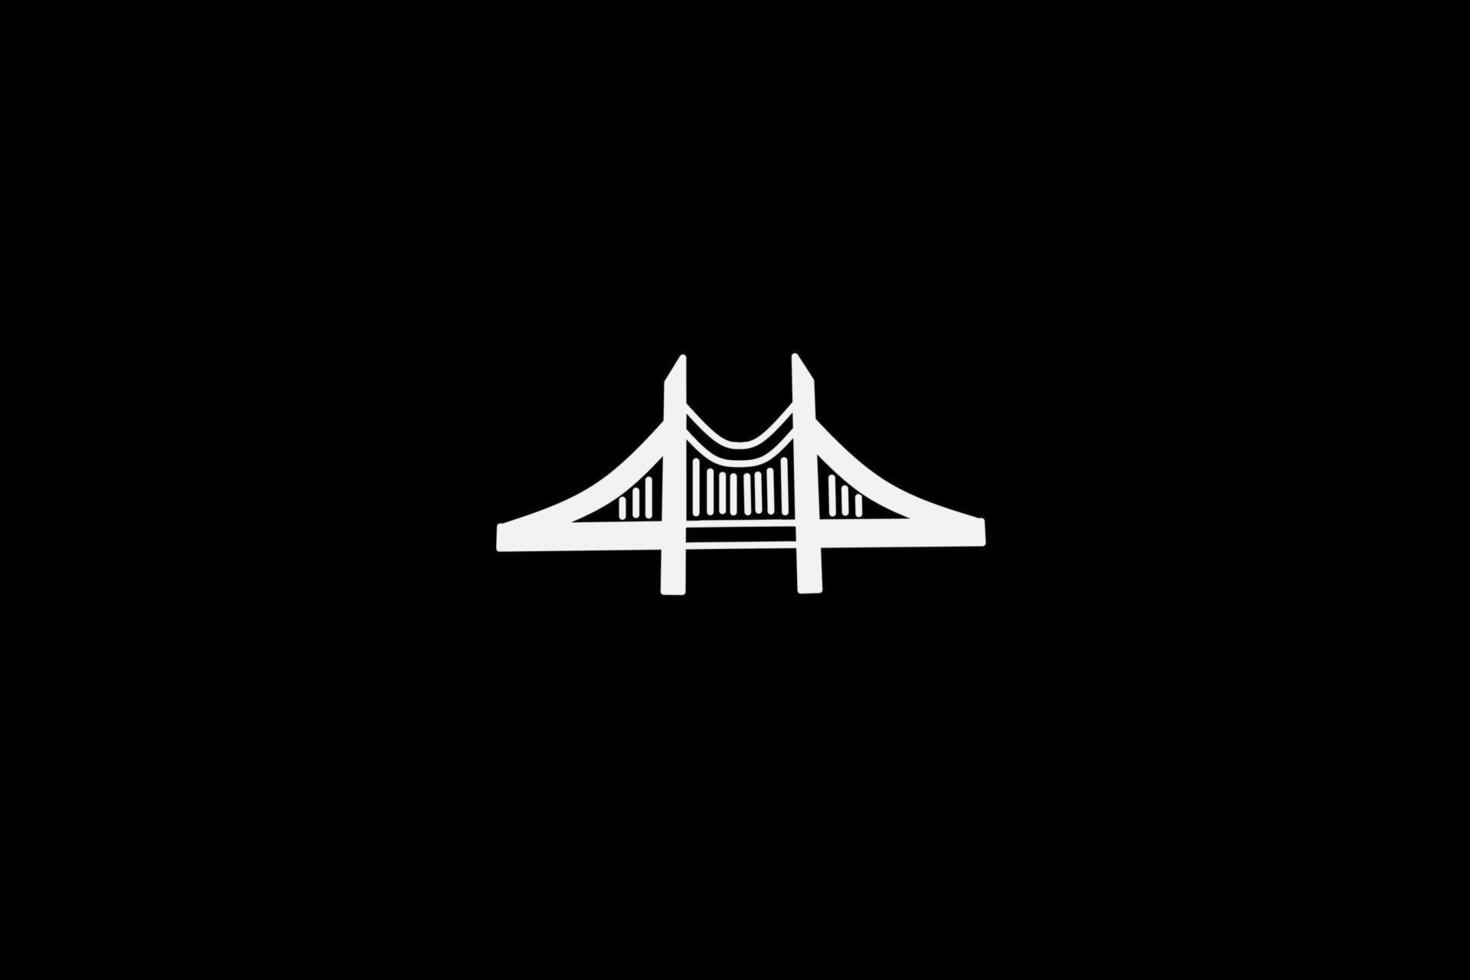 Bridge gate line pop art potrait logo diseño colorido con fondo oscuro. ilustración vectorial abstracta. papel pintado minimalista oscuro vector